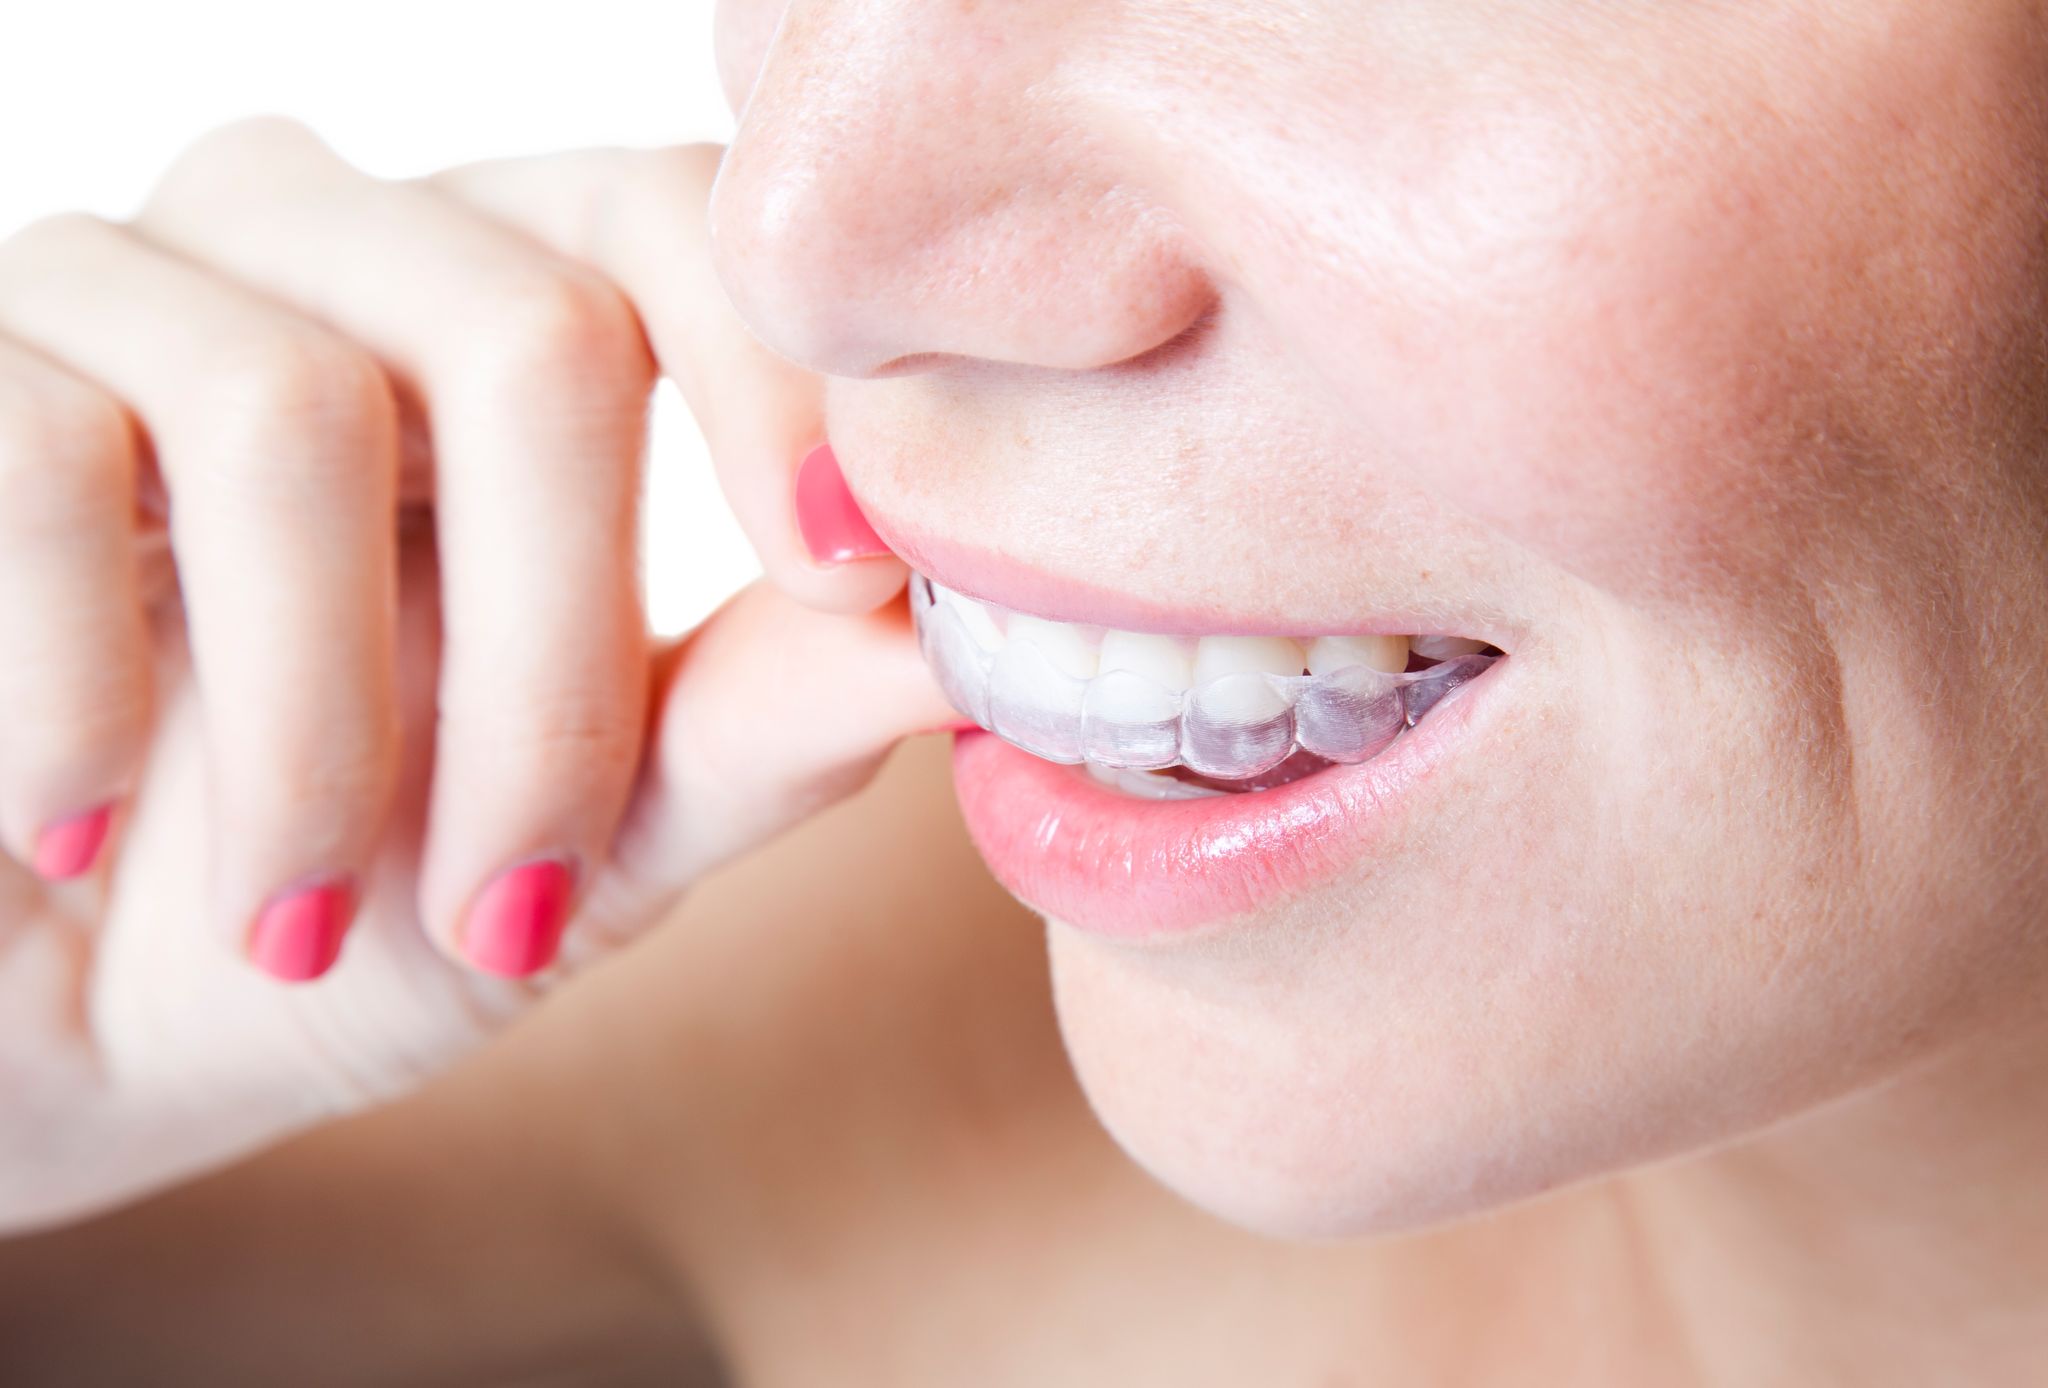 Appareil dentaire adulte invisible : quelles possibilités ? – L'Express